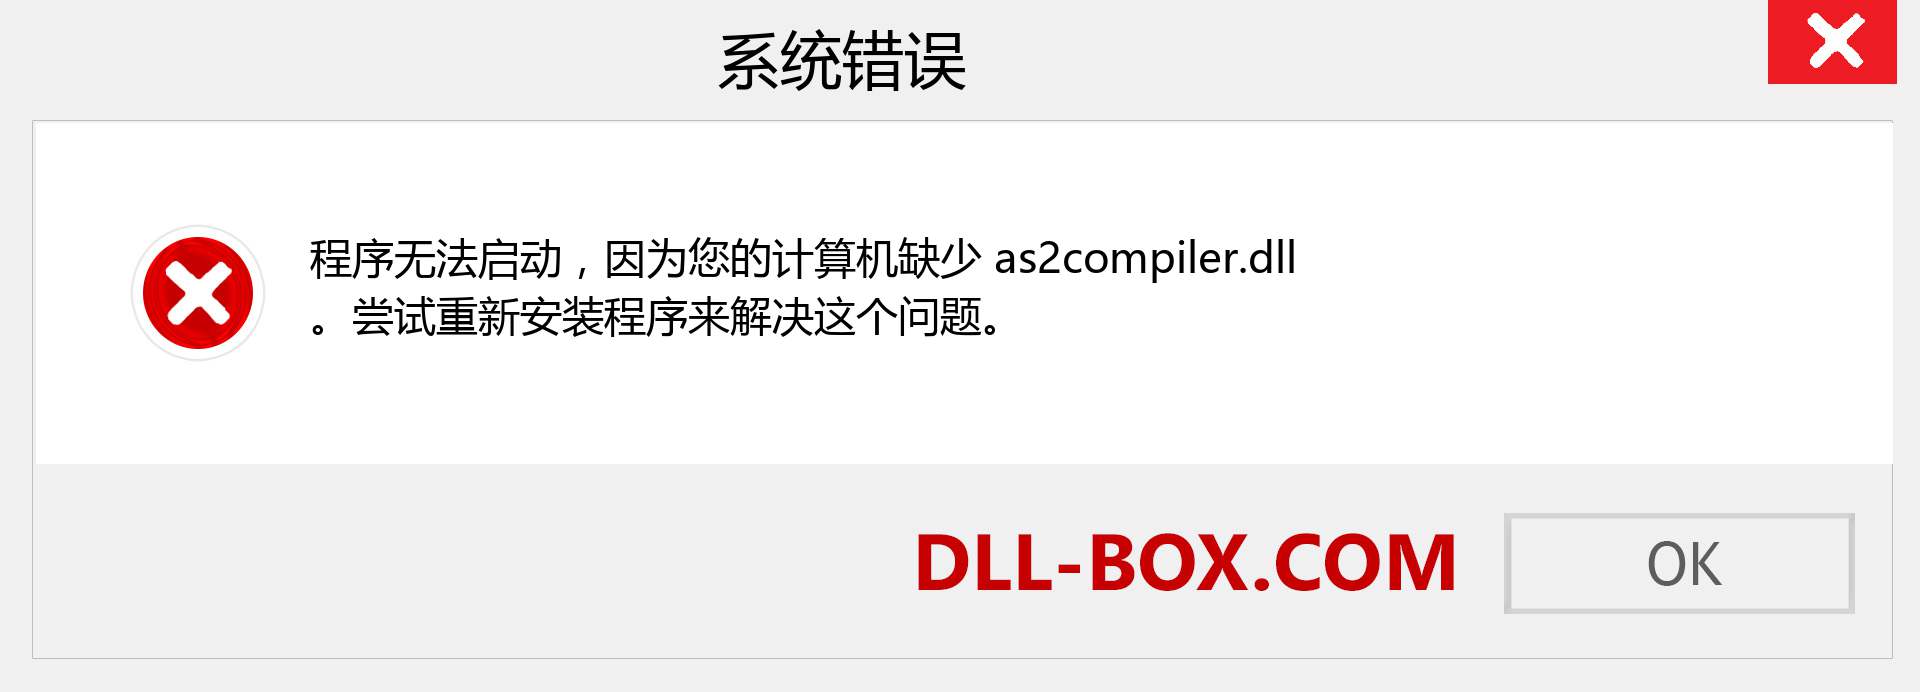 as2compiler.dll 文件丢失？。 适用于 Windows 7、8、10 的下载 - 修复 Windows、照片、图像上的 as2compiler dll 丢失错误